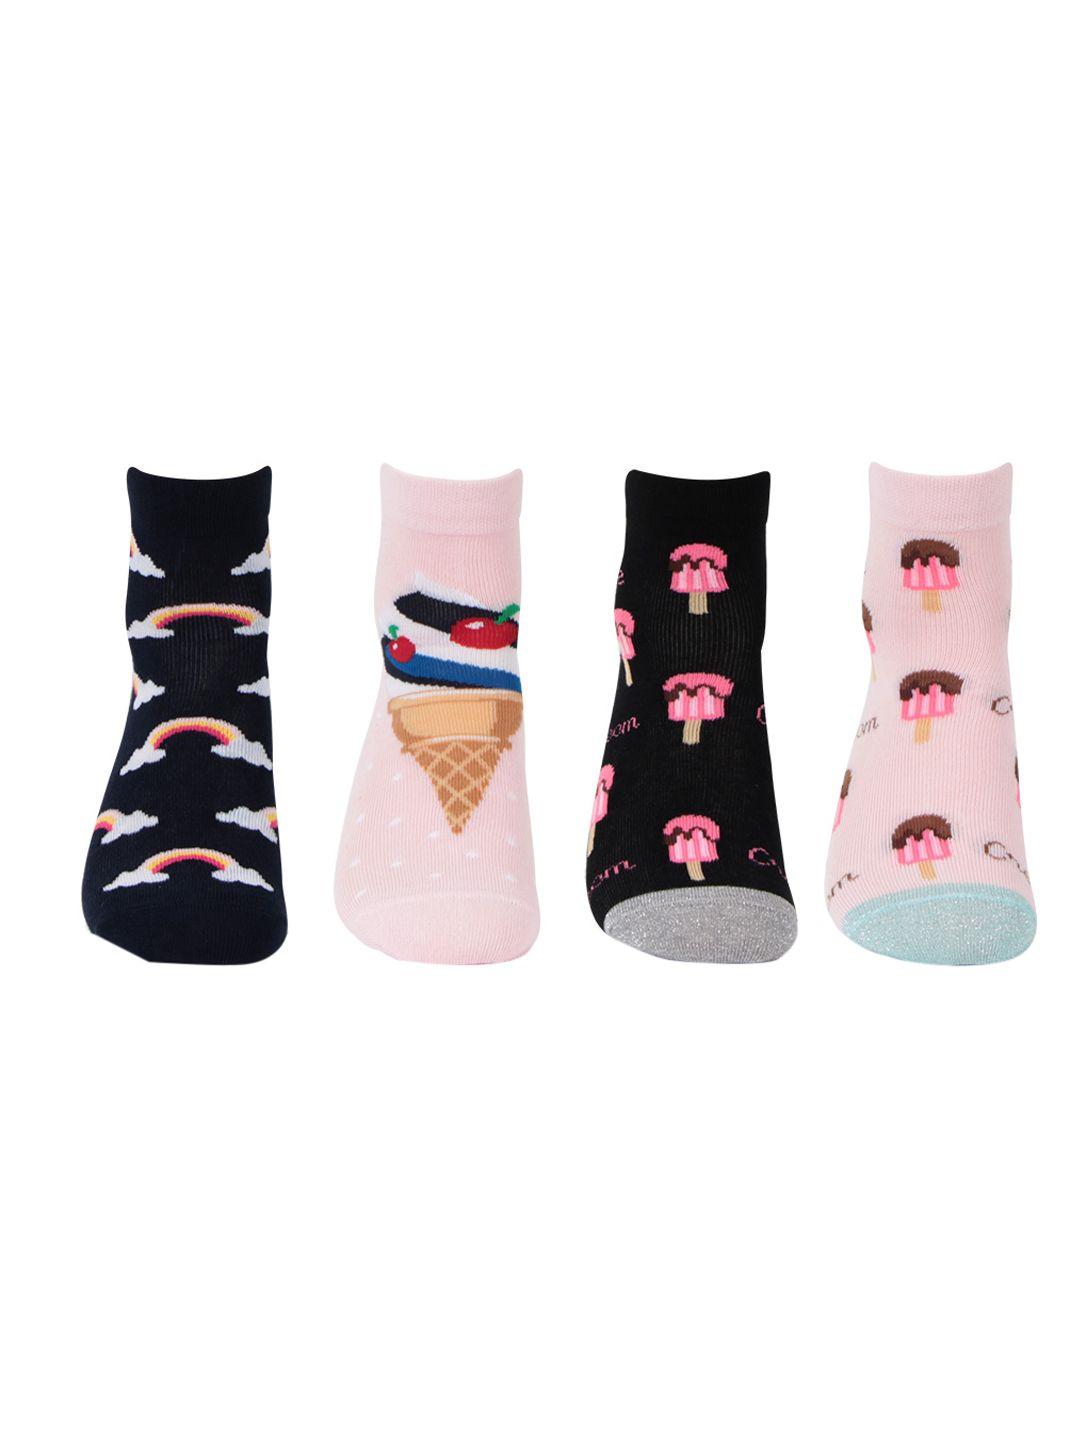 bonjour girls pack of 4 patterned socks